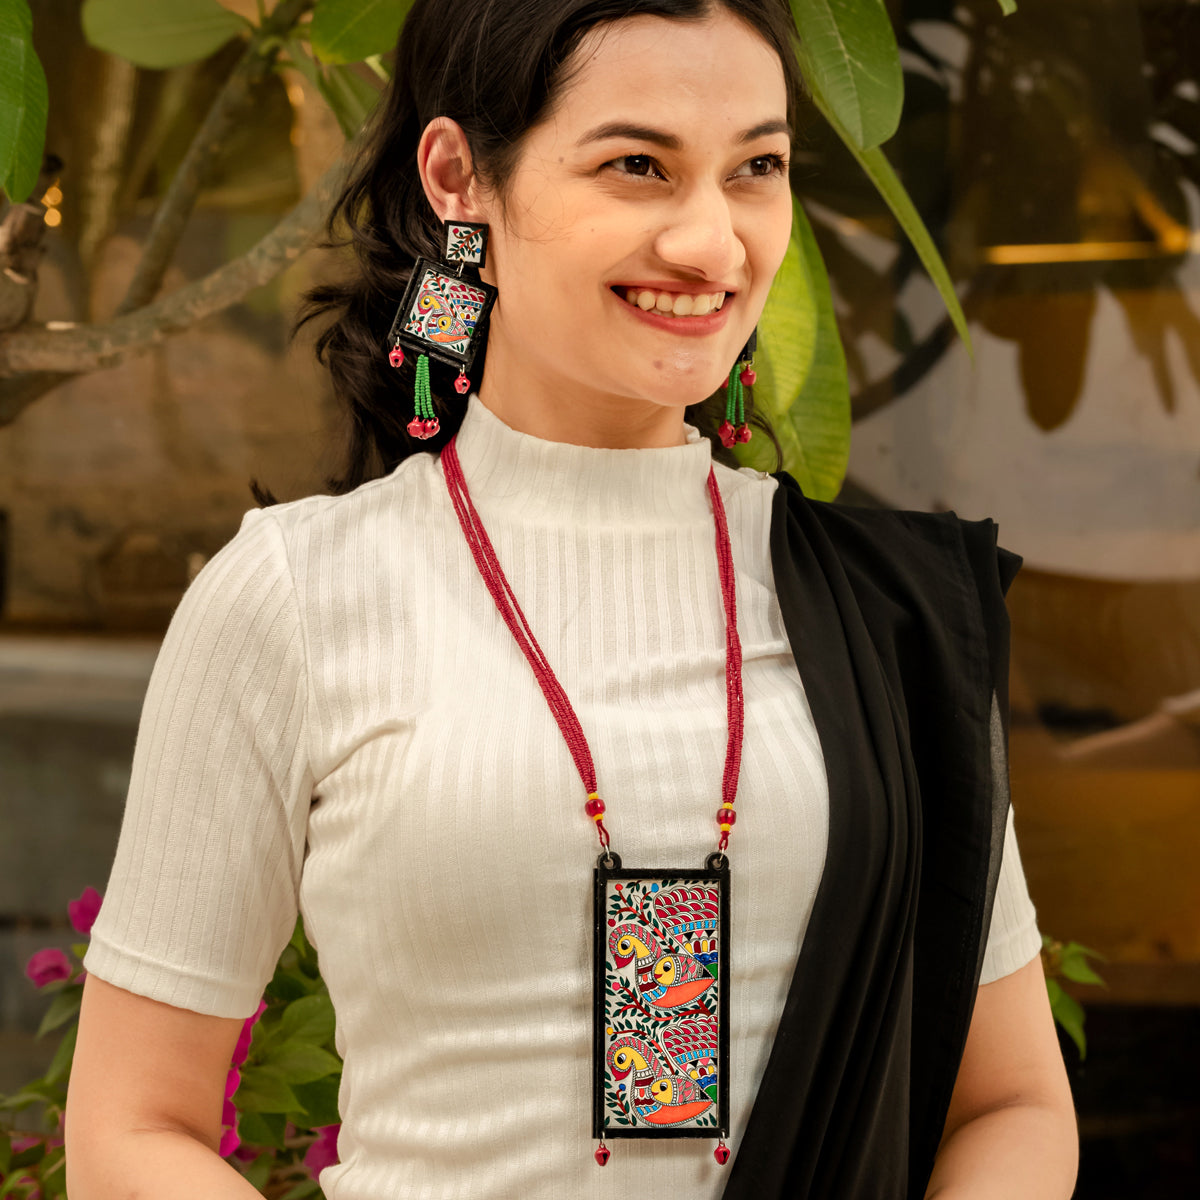 Naina - Madhubani Handpainted Wooden Necklace Set